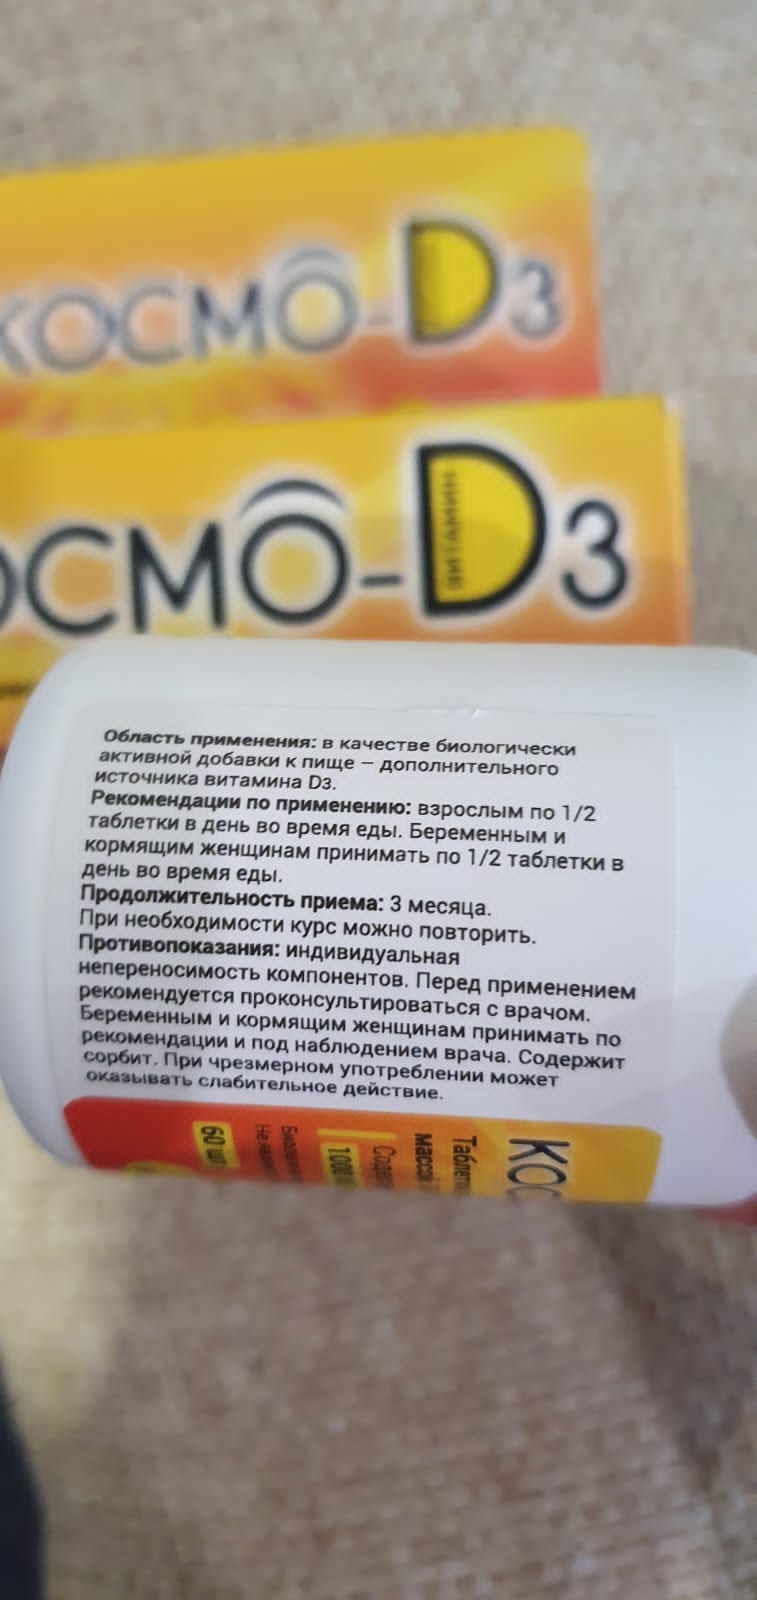 Космо D3 - Космо-D3 - удобный формат приема витамина Д